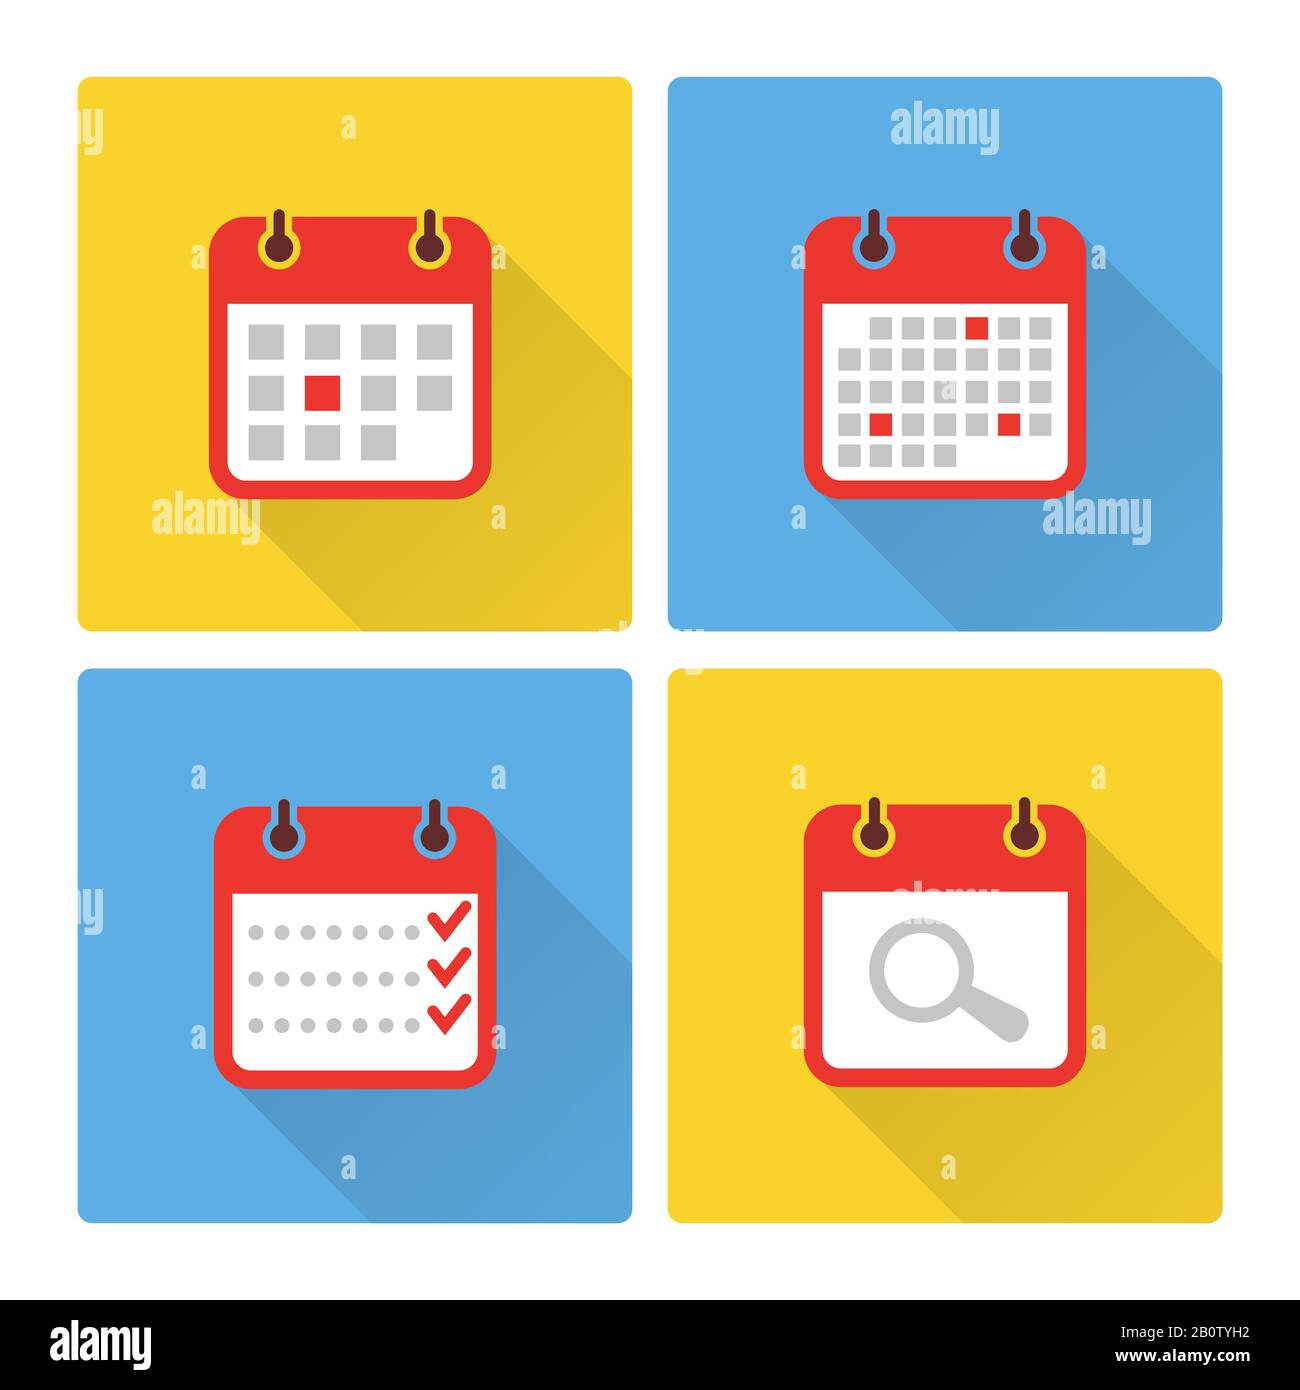 Kalender und zum erledigen farbenfroher flacher Symbole. Symbole auf der Seite "Kalenderplan". Vektorgrafiken Stock Vektor